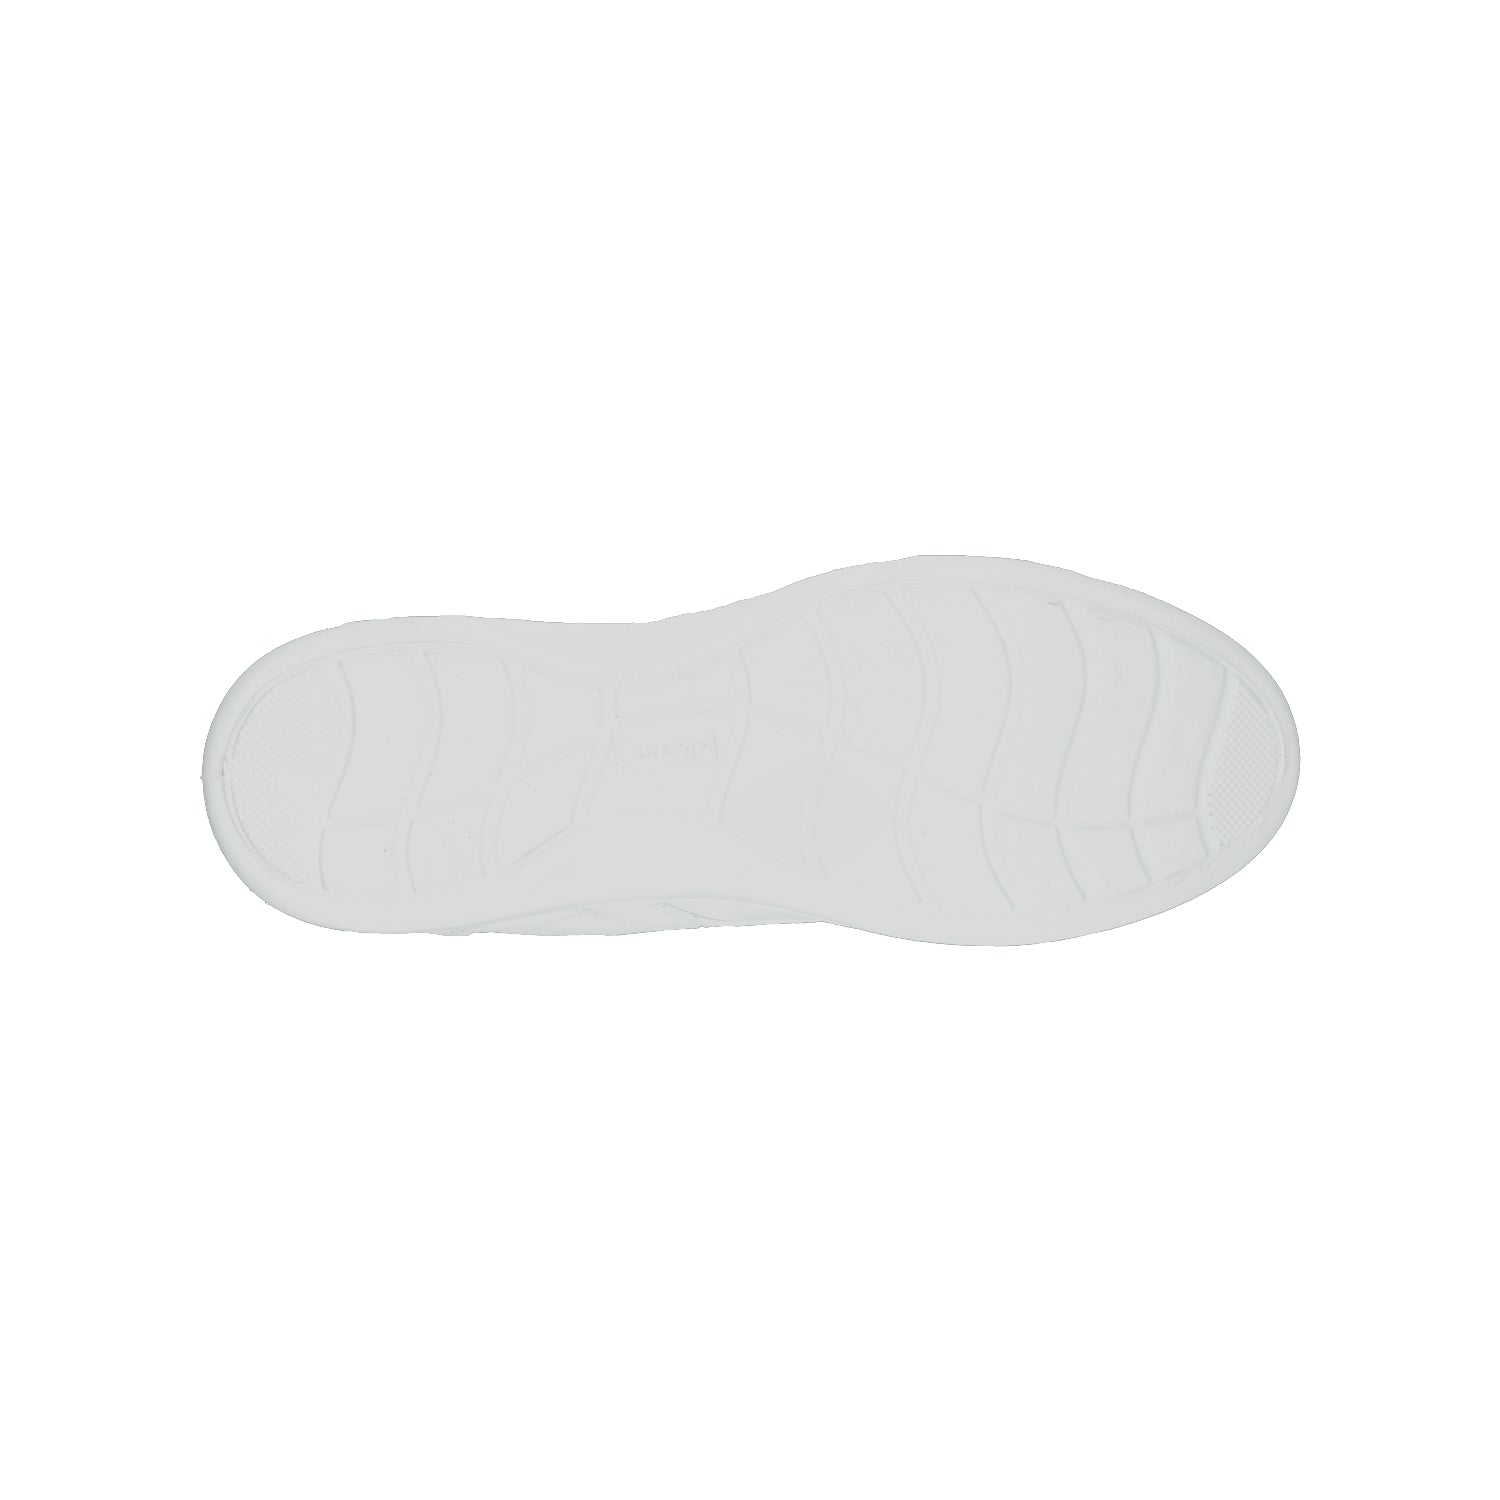 Zapato de Servicio Clínico Larespi Blanco para Mujer [LAR5]